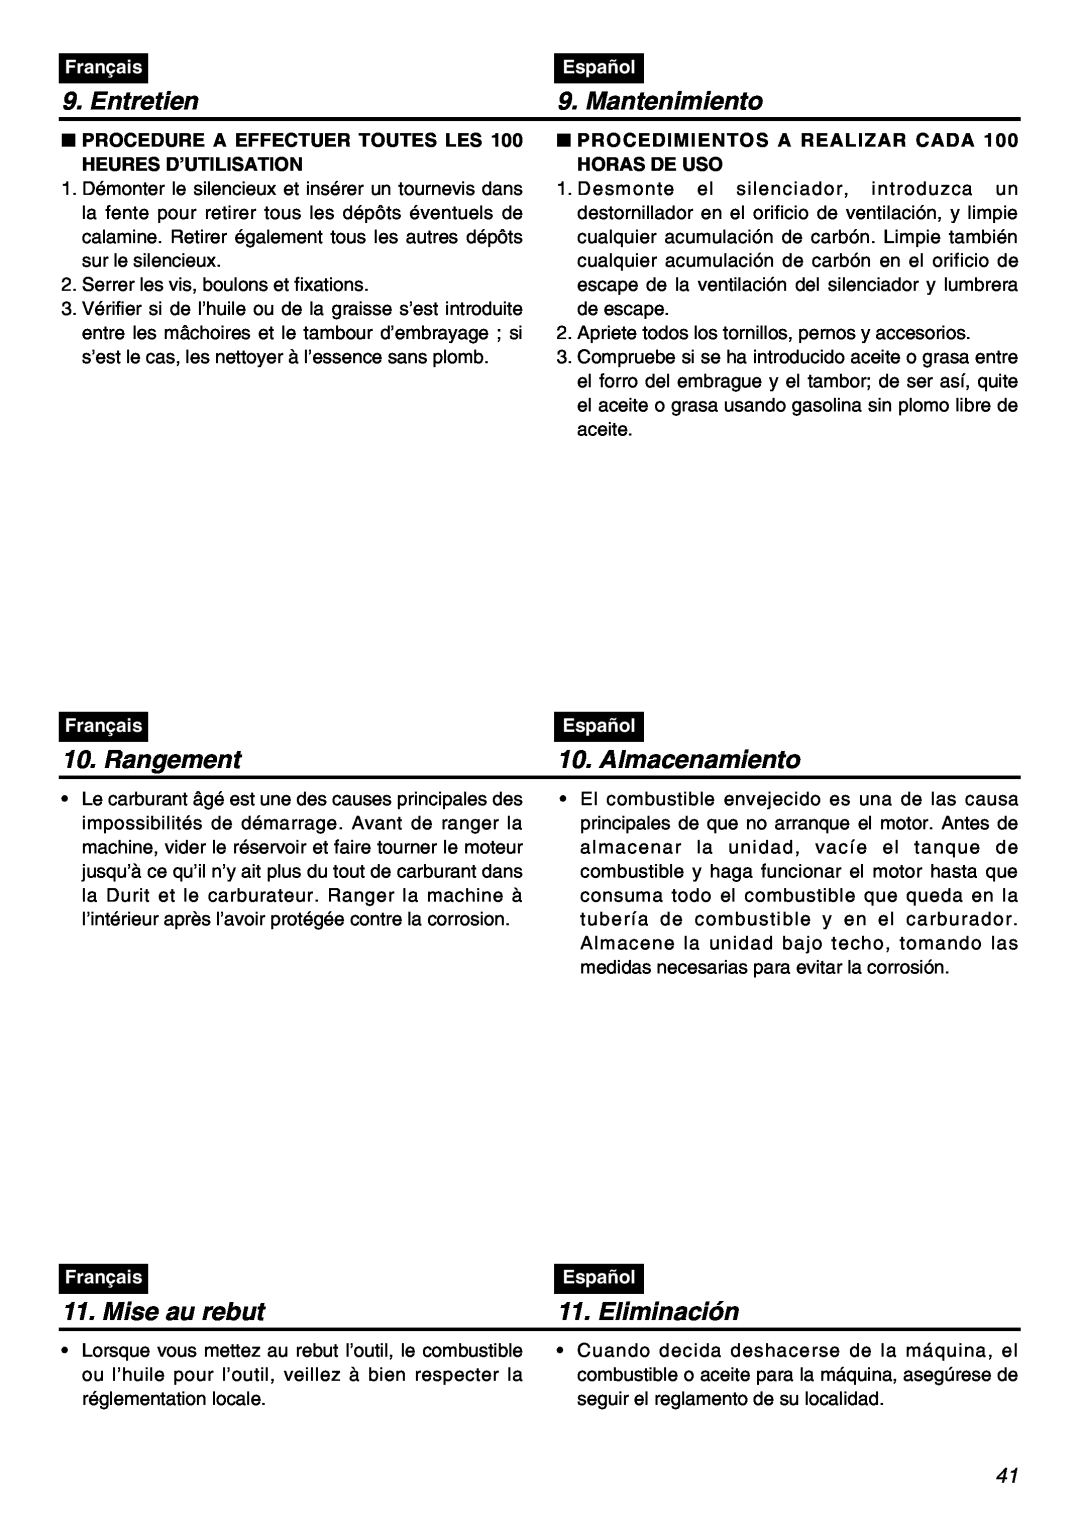 Zenoah TR2301S manual Entretien, Mantenimiento, Rangement, Almacenamiento, Mise au rebut, Eliminación, Français, Español 